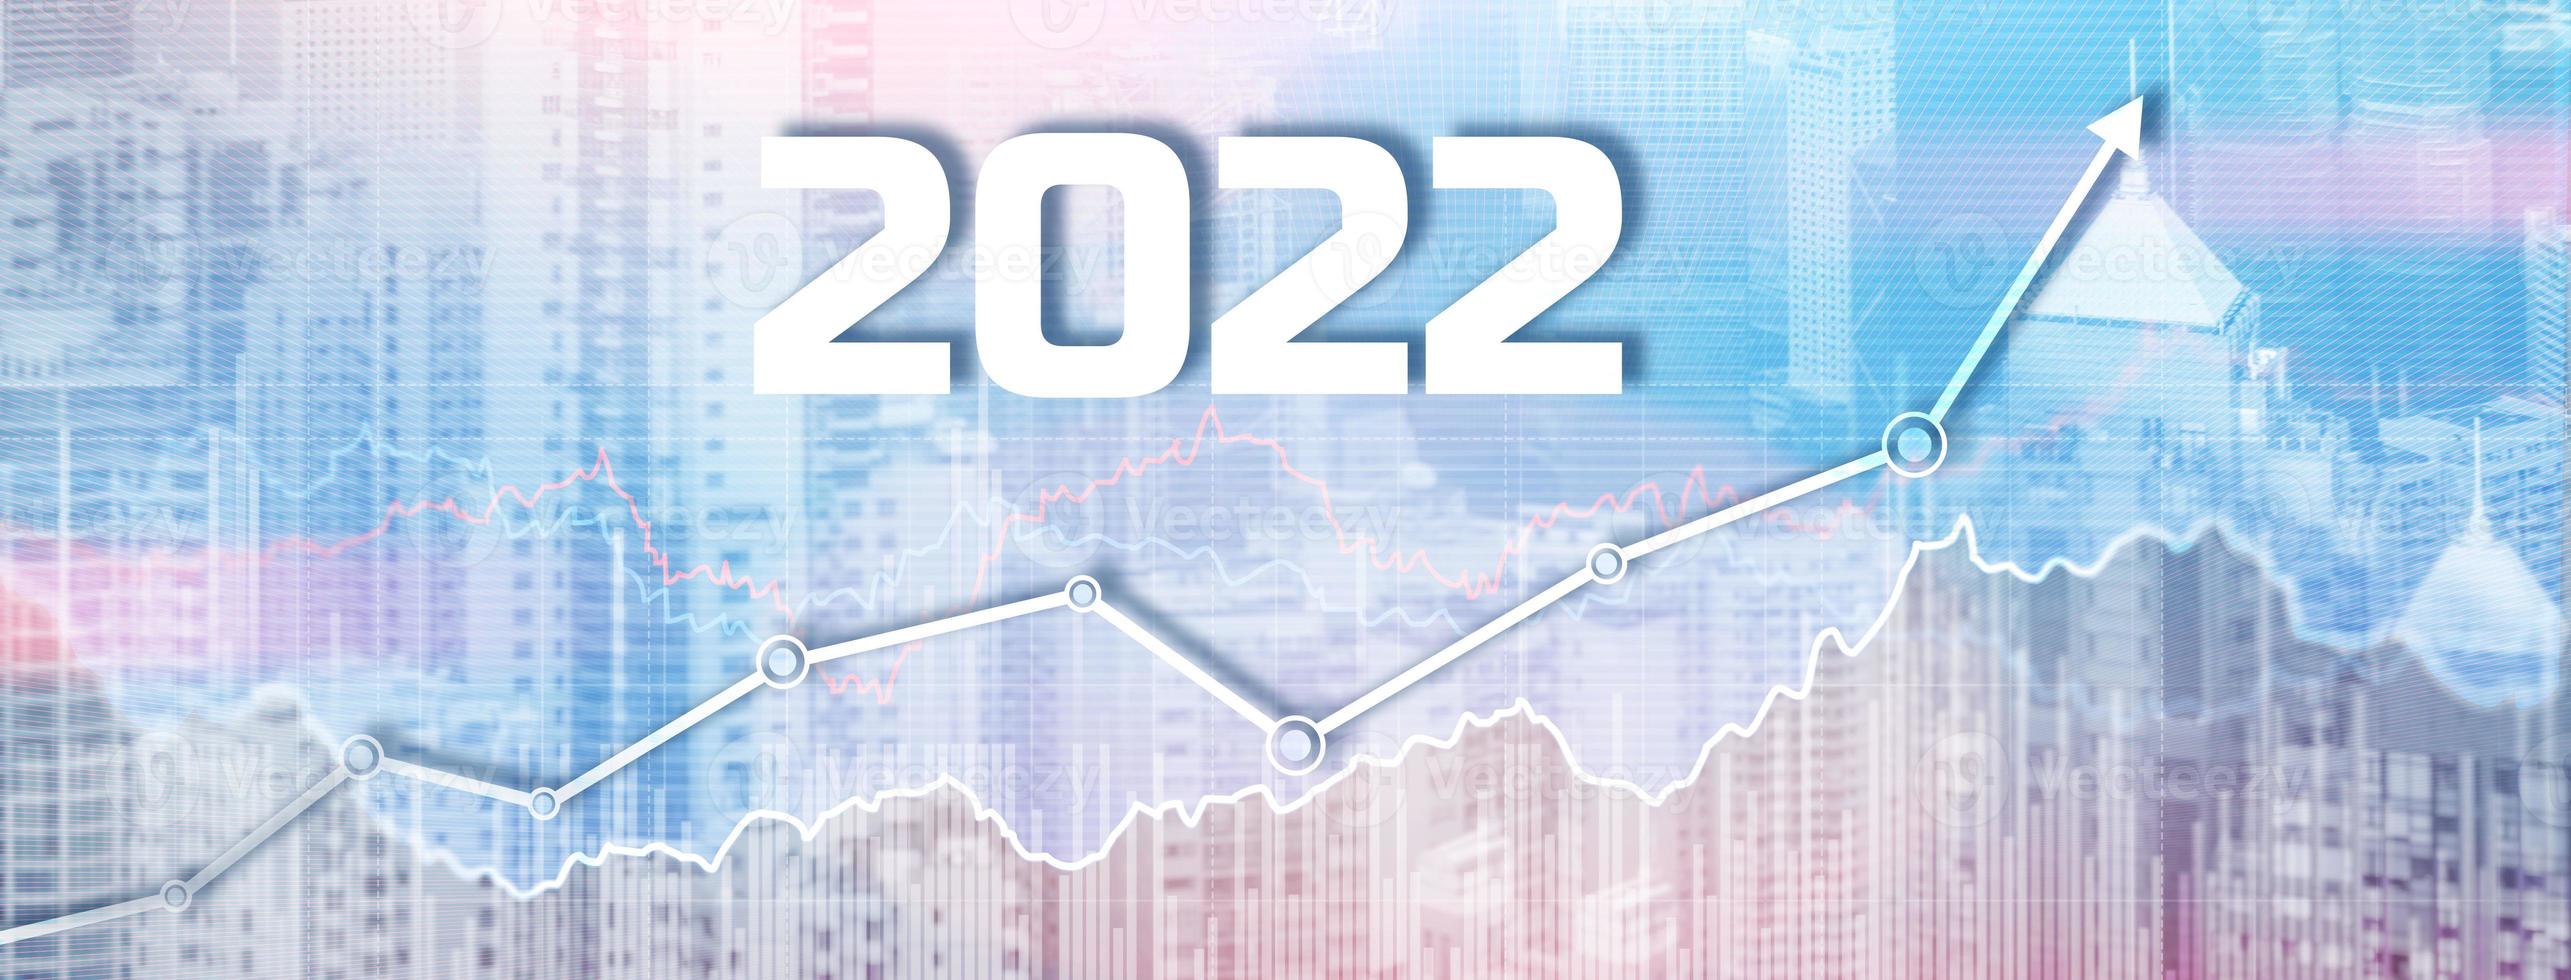 nuovo anno 2022 sullo sfondo della città moderna. banner del sito web foto